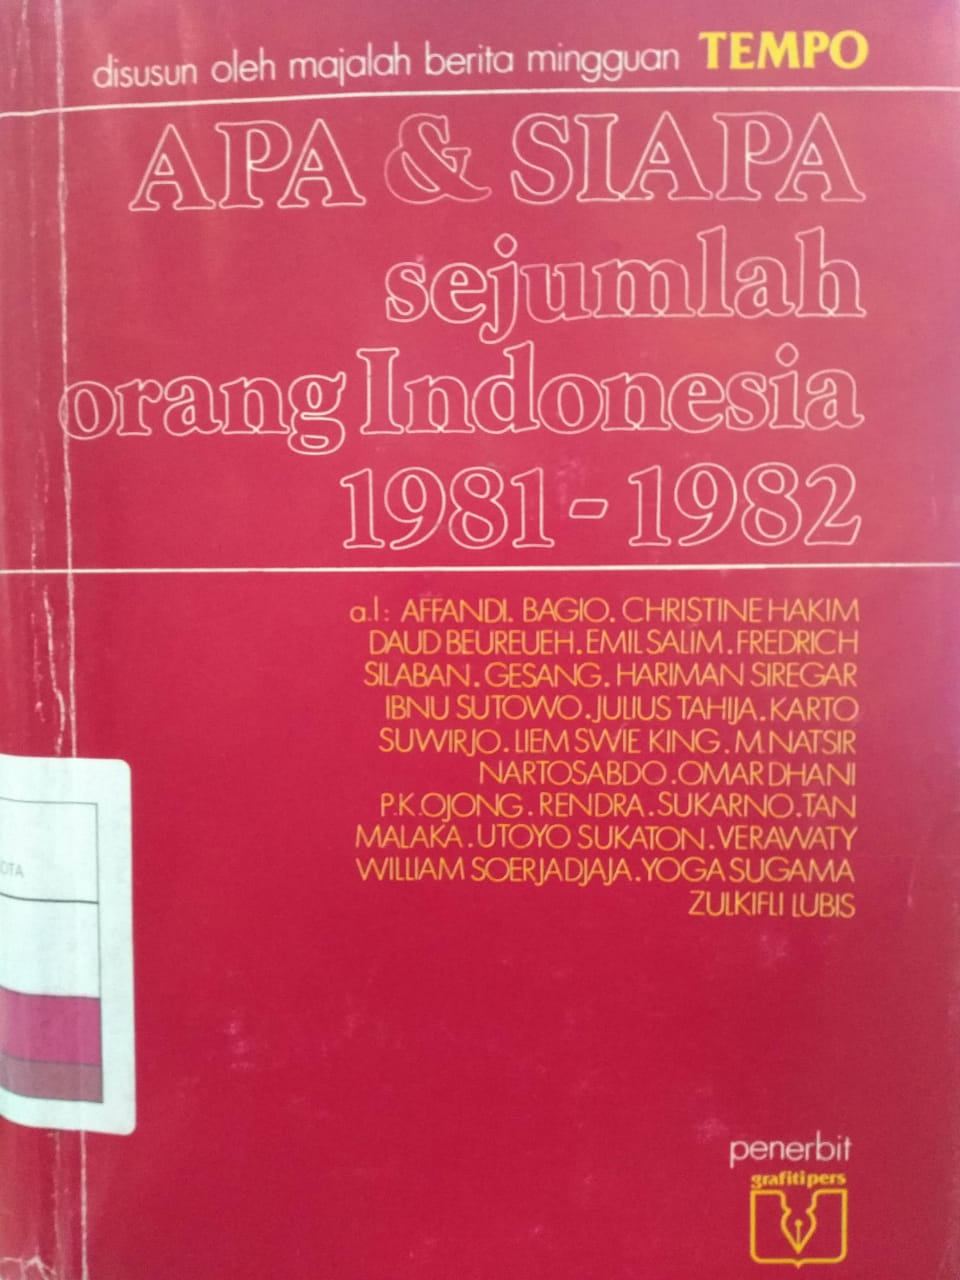 Apa & Siapa sejumlah orang Indonesia 1981-1982